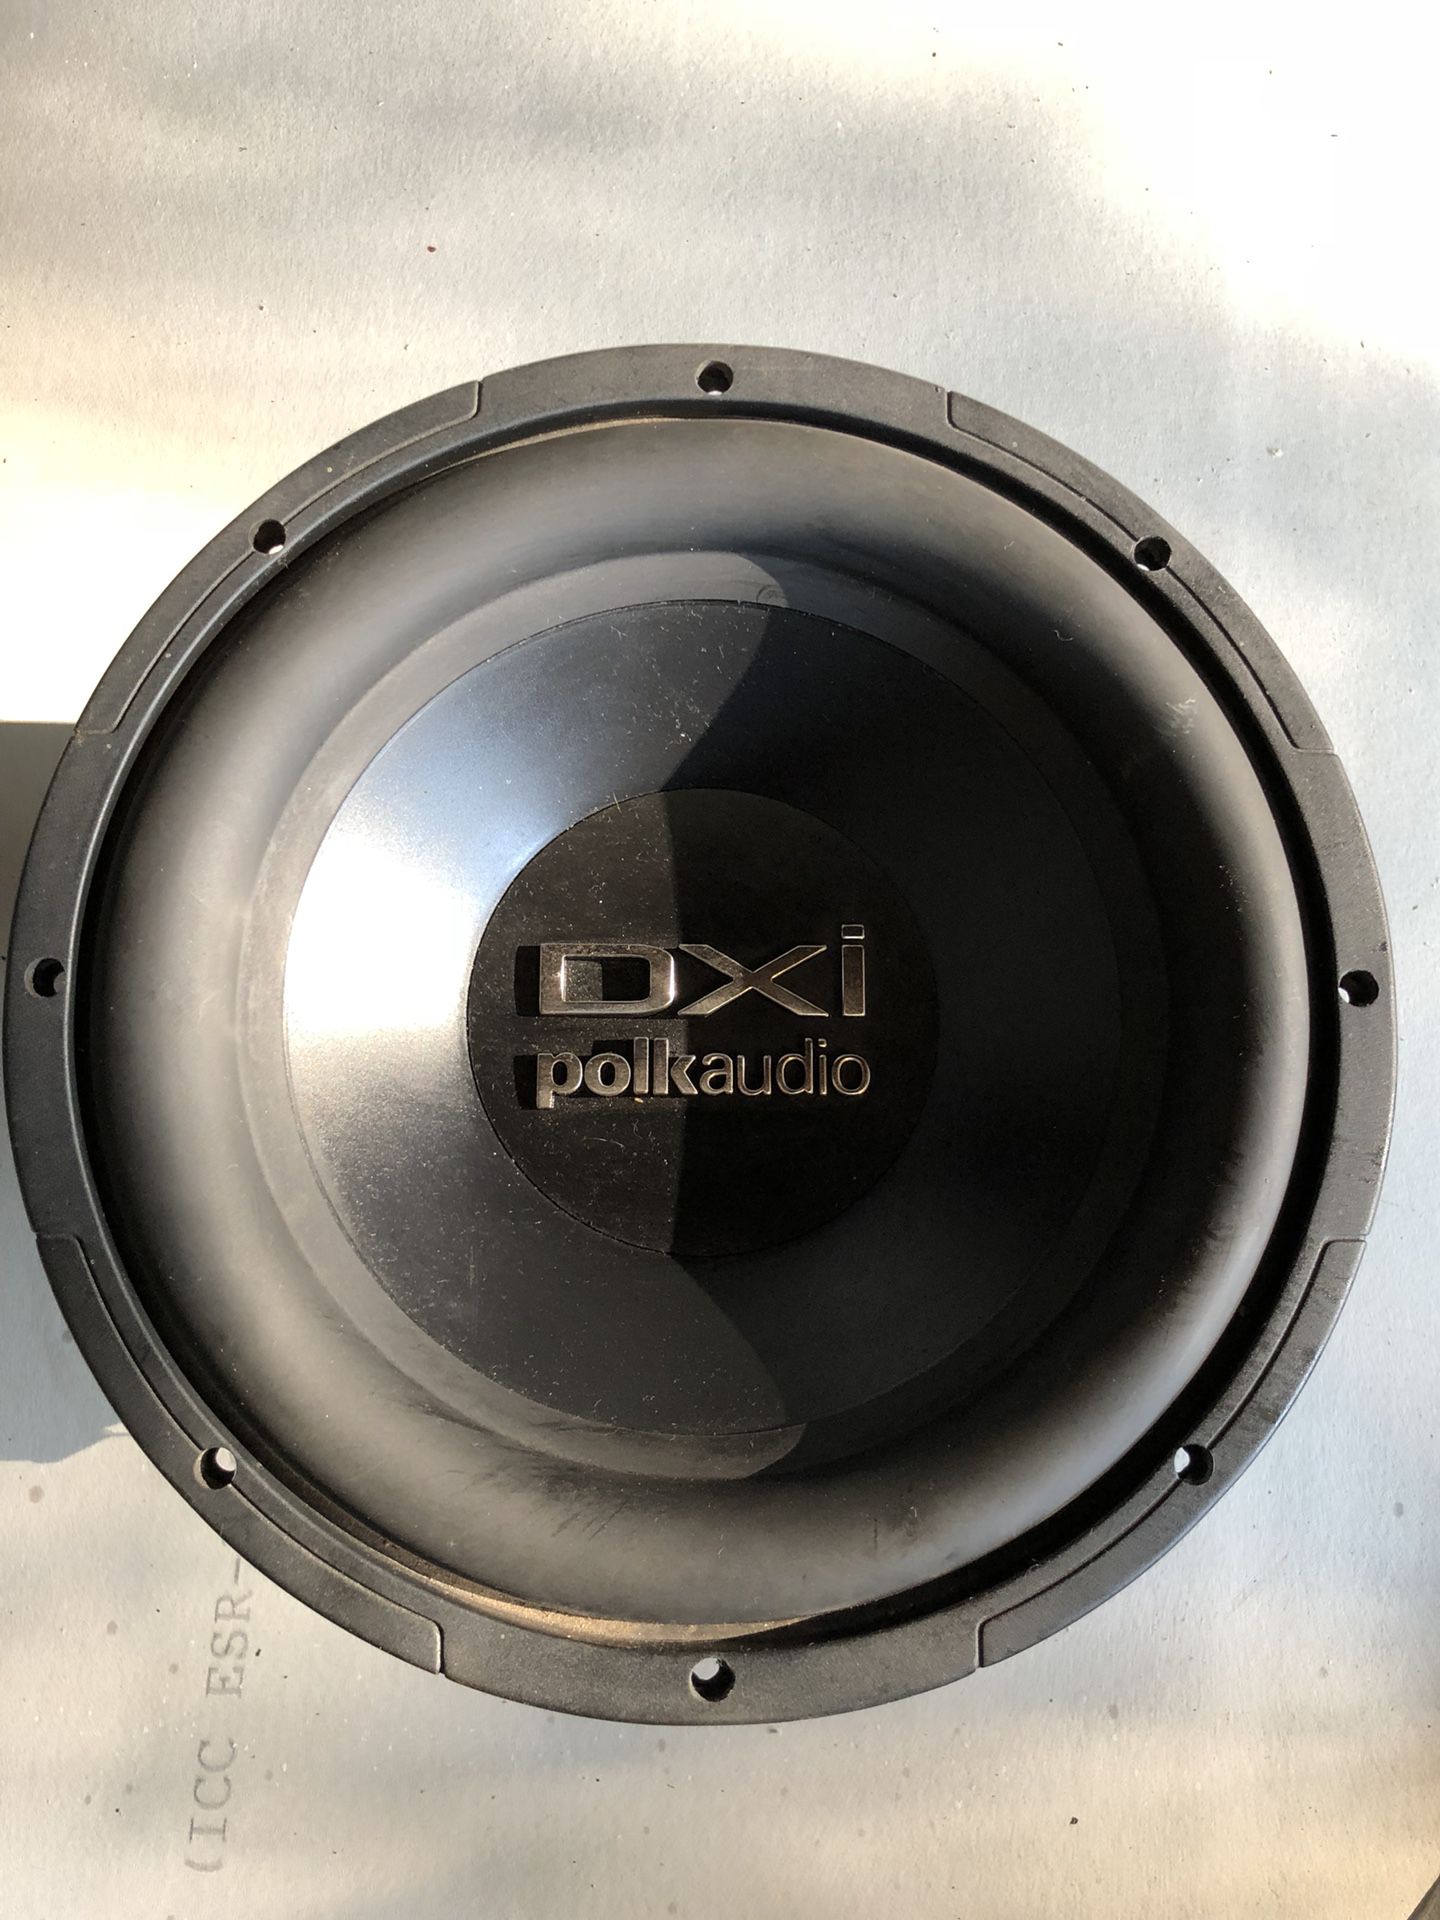 Polk audio speaker 10”